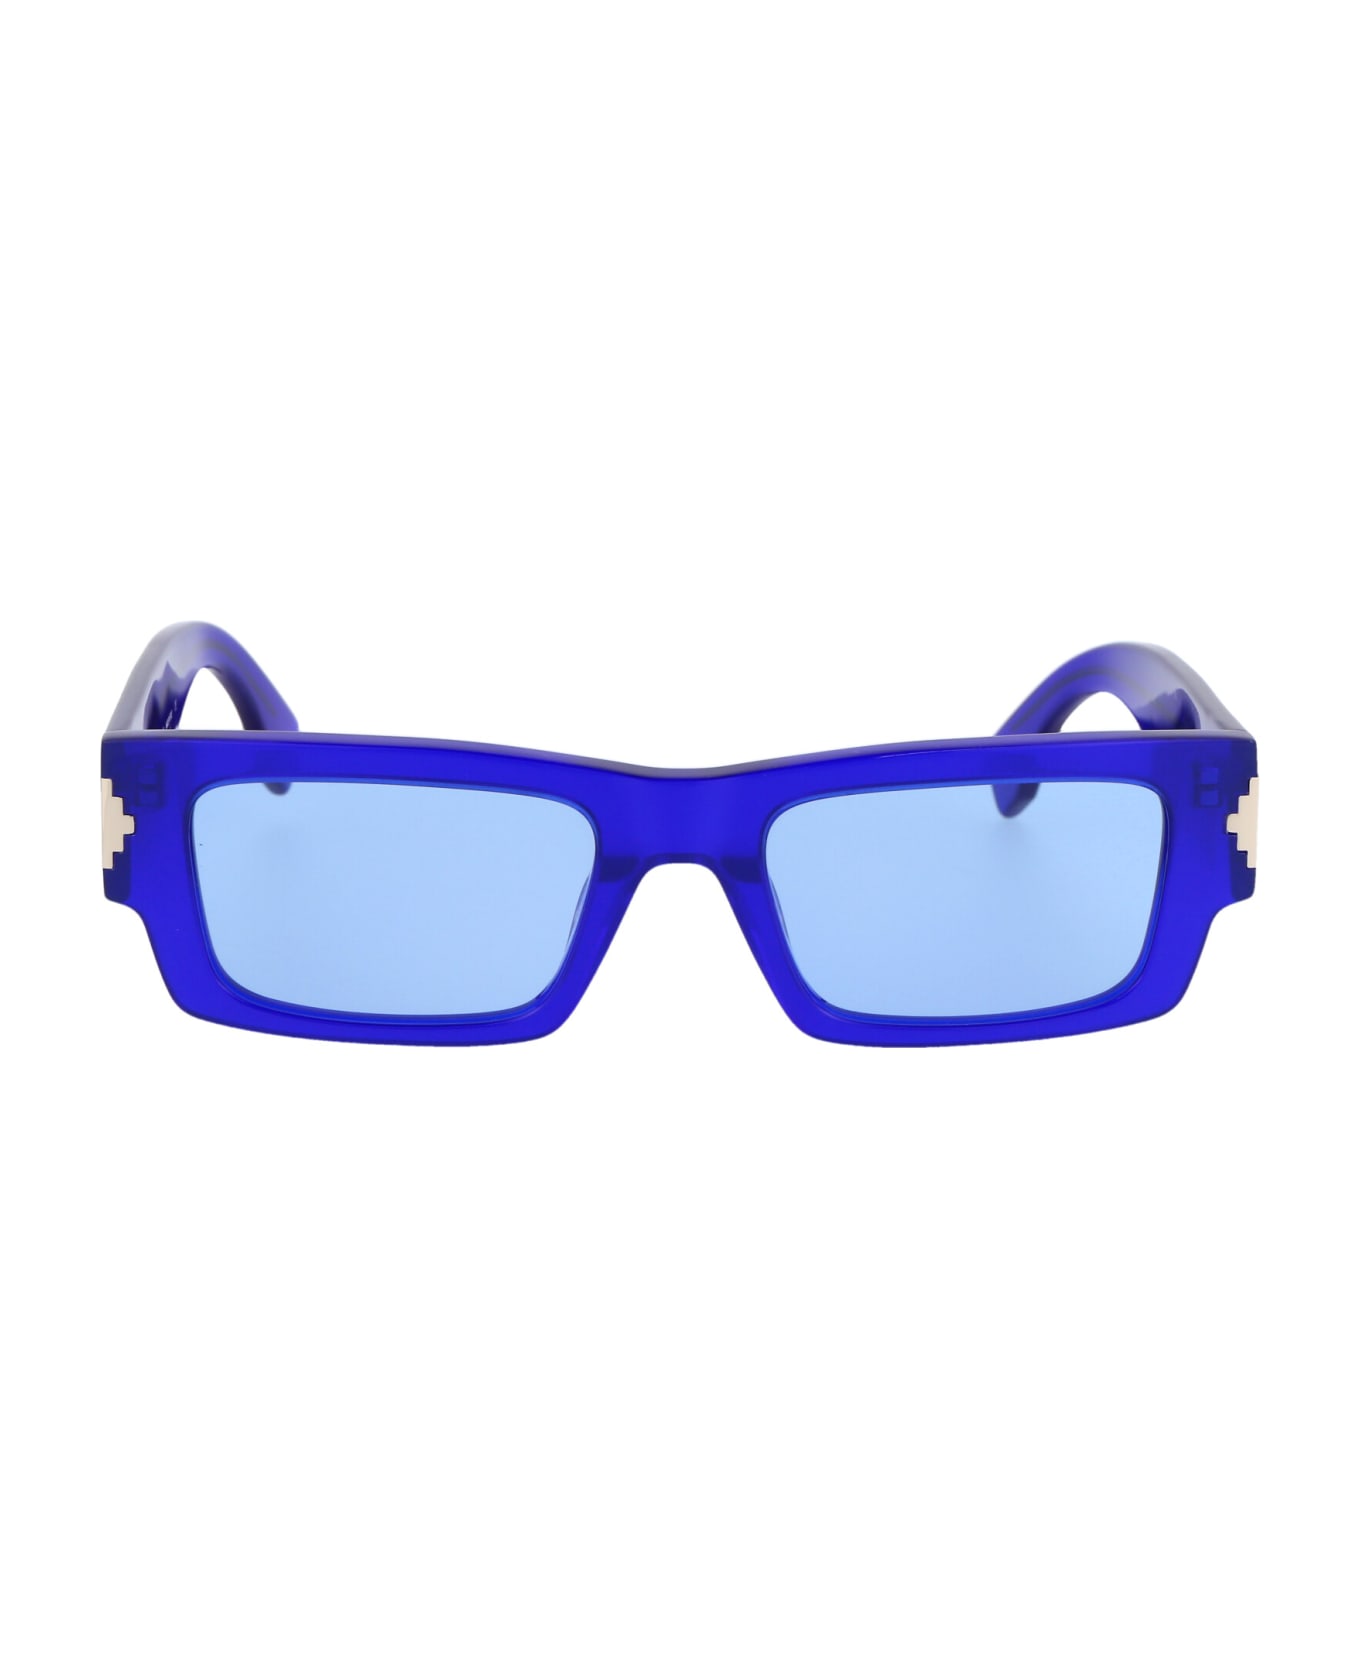 Marcelo Burlon Alerce Sunglasses - 4540 BLUE